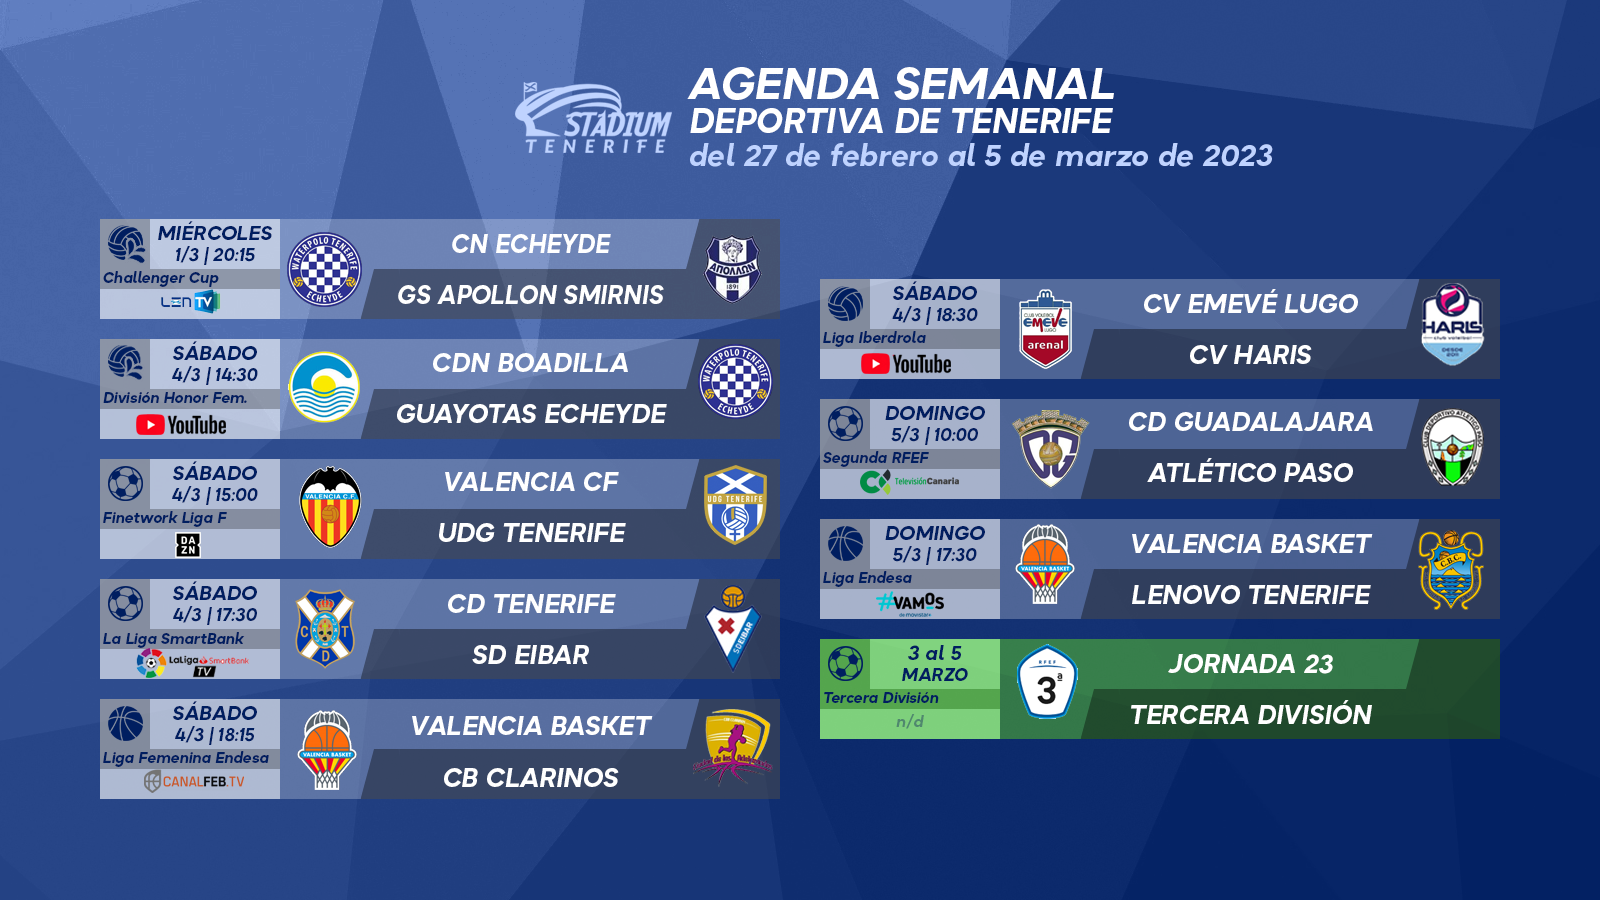 Agenda Semanal Deportiva de Tenerife (27 de febrero al 5 de marzo)